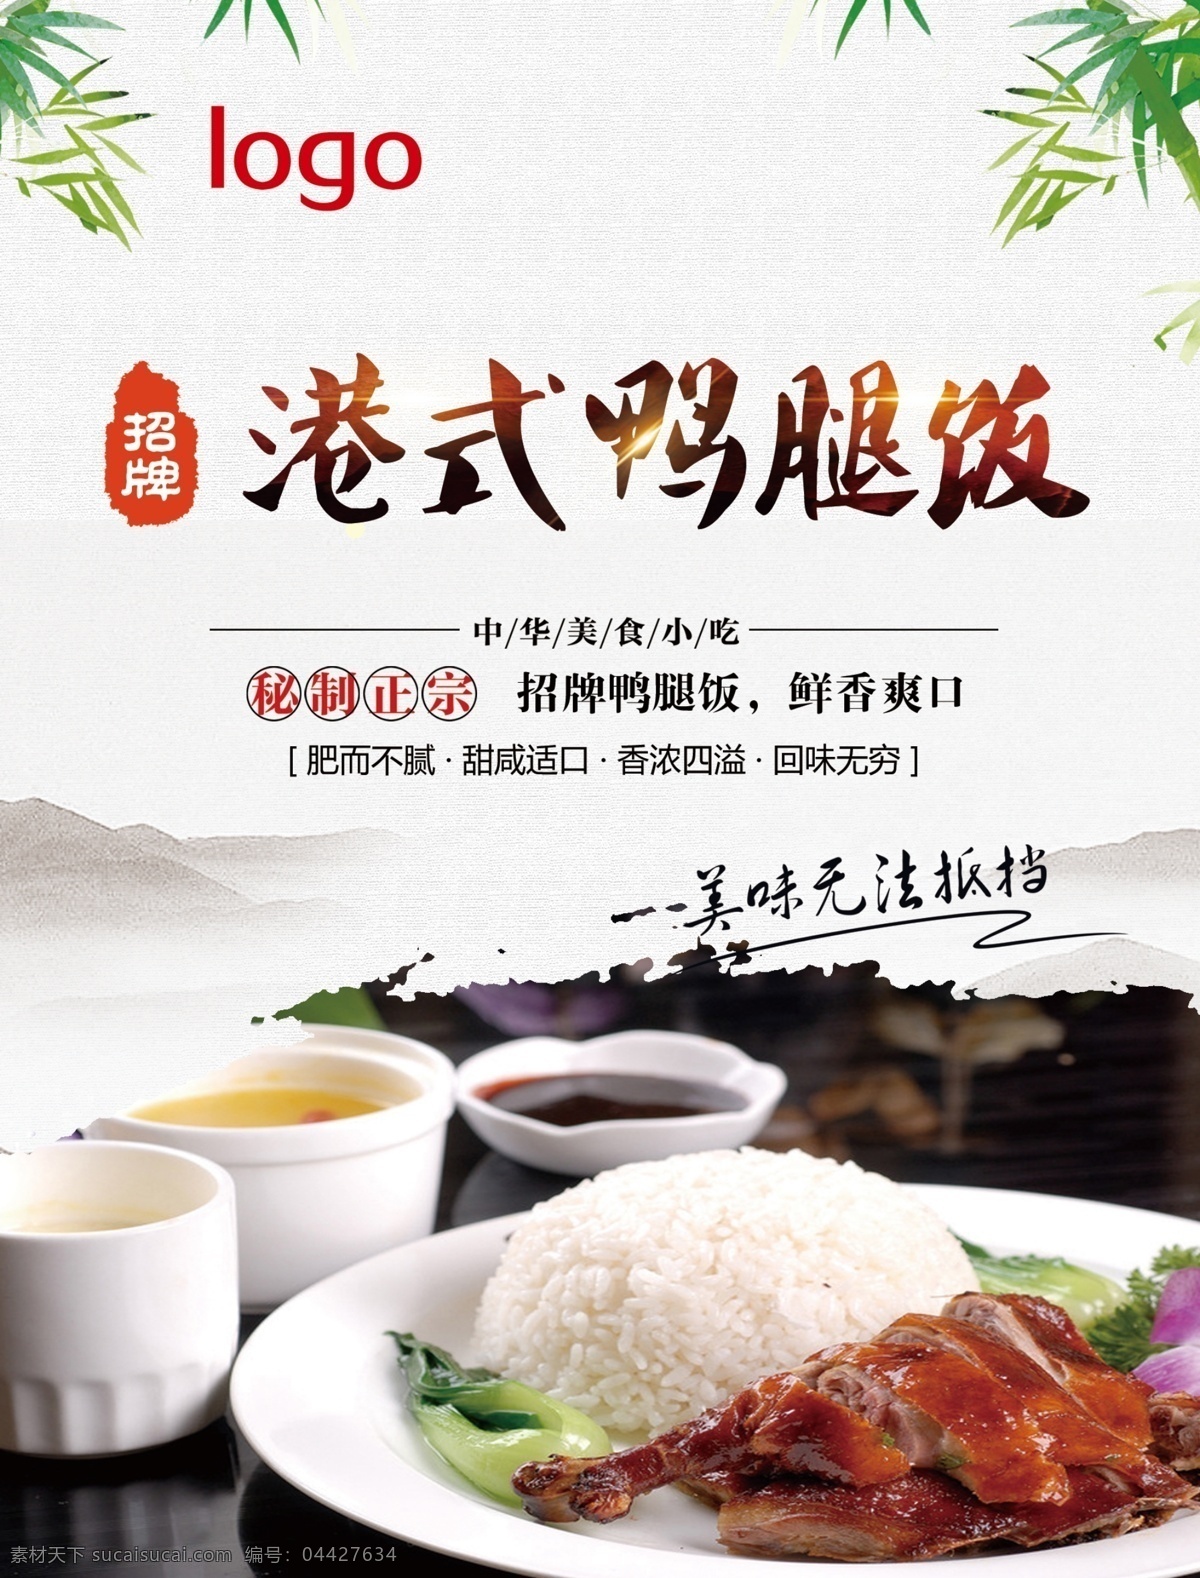 港式鸭腿饭 餐饮文化 餐饮海报 鸭腿 米饭 中国风 山 午餐 招牌